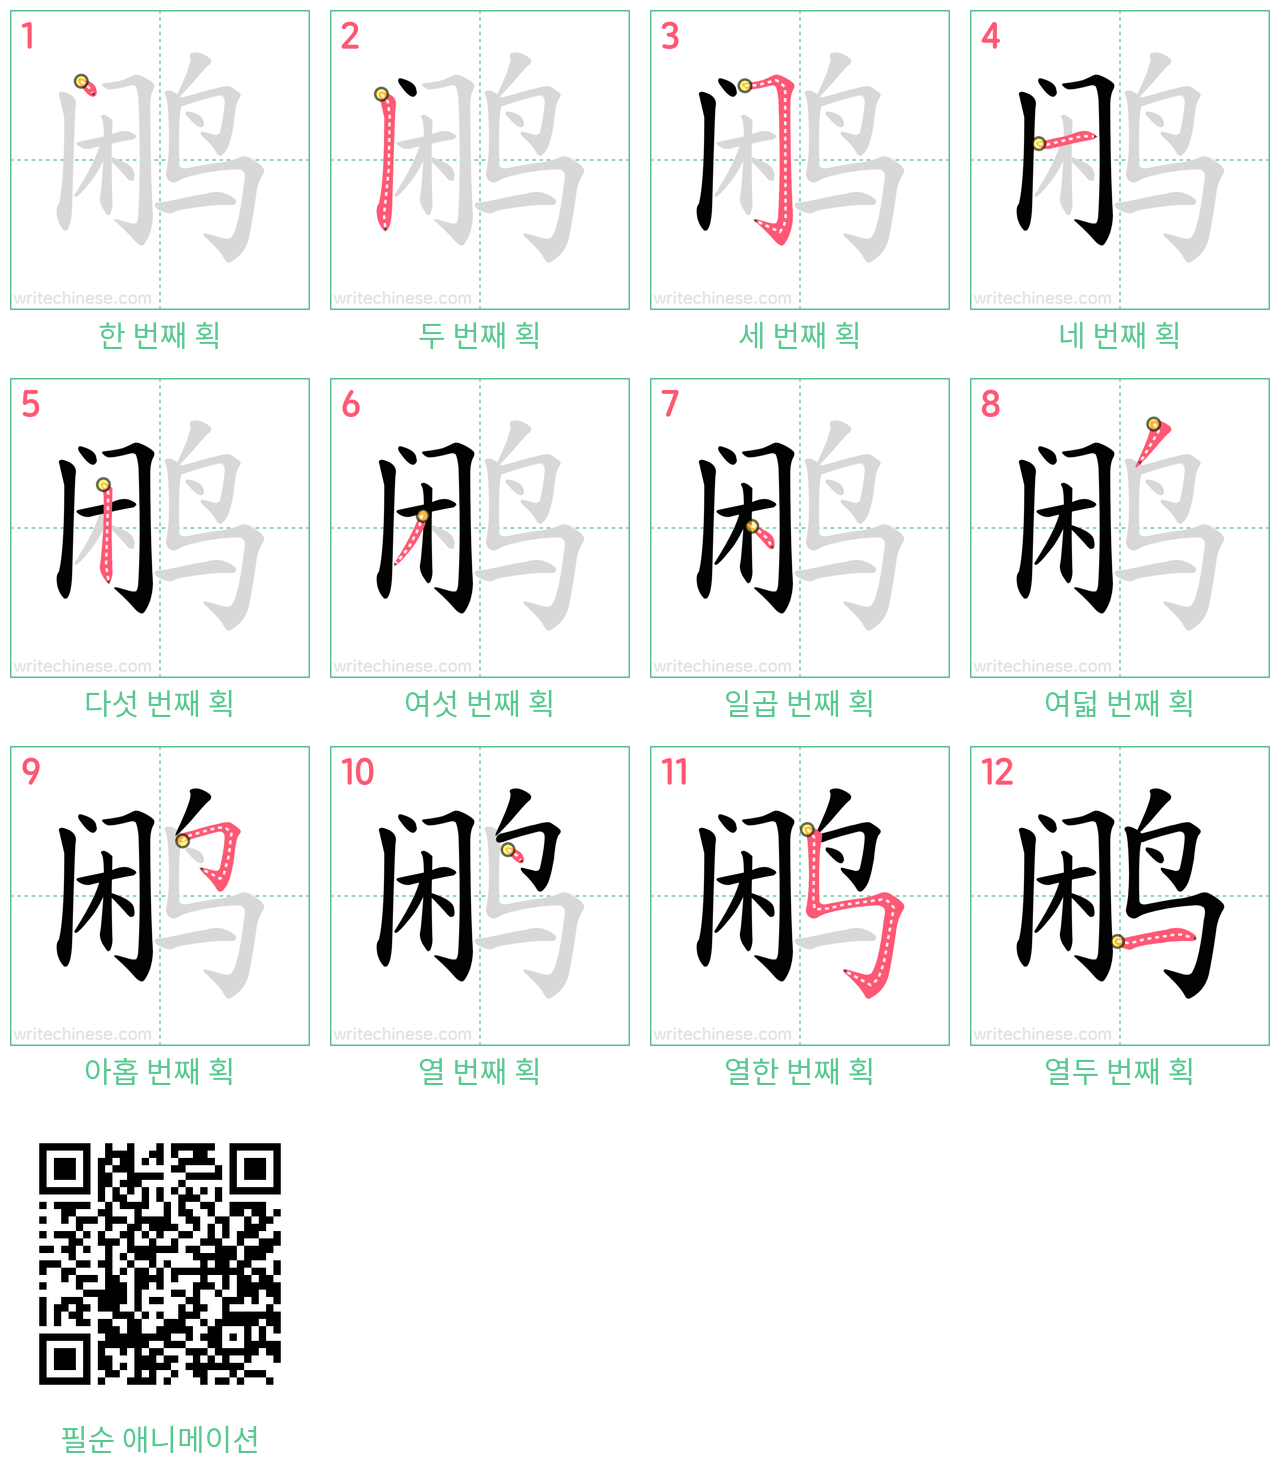 鹇 step-by-step stroke order diagrams